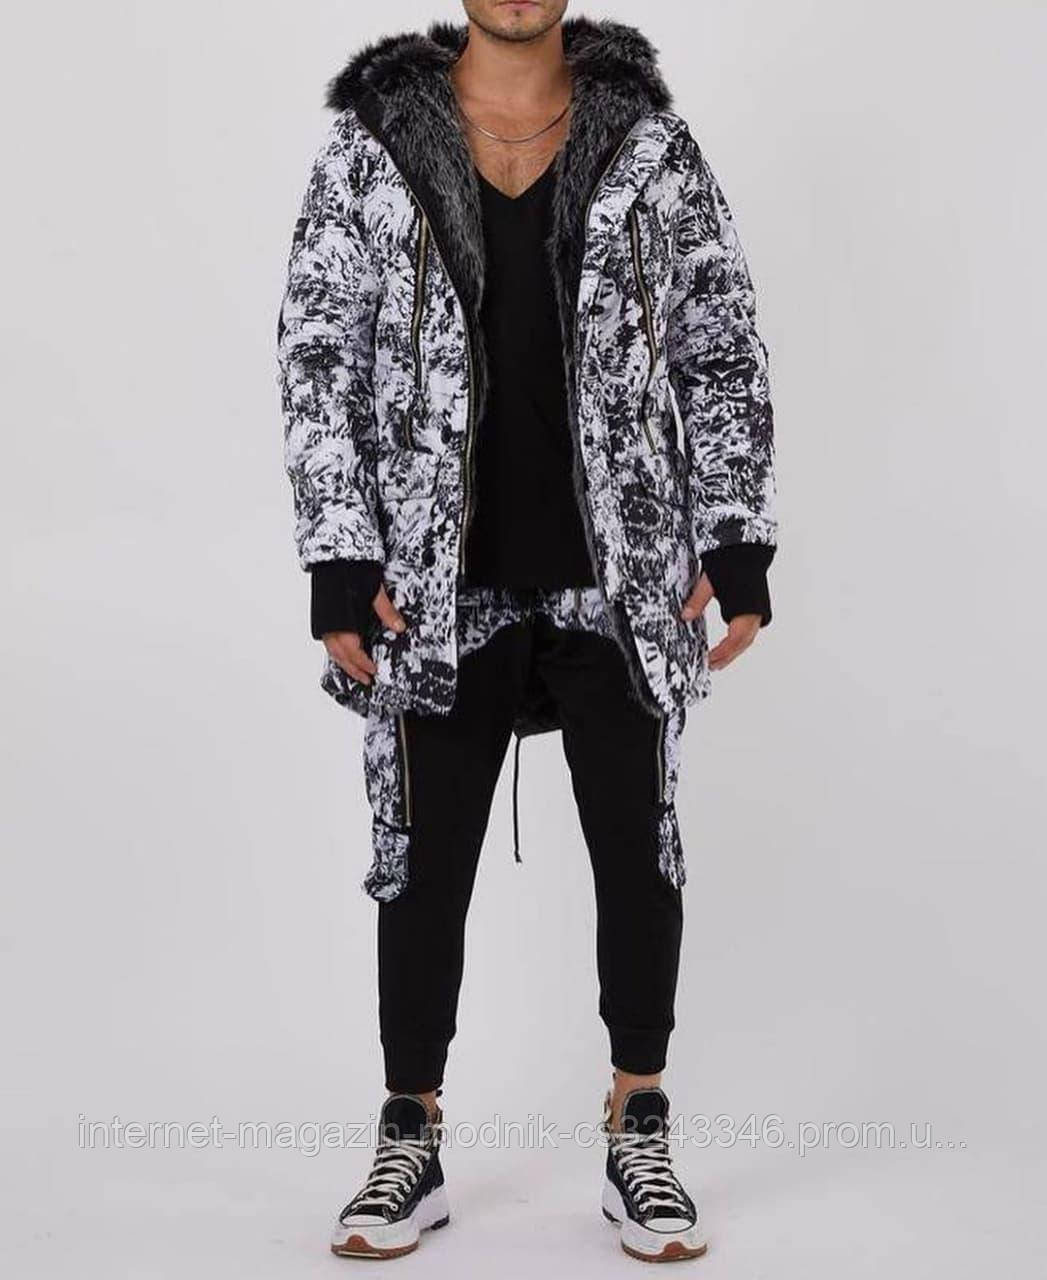 

Мужская зимняя куртка стильная спринтом (серая) sop5 длинная теплая пуховка с мехом XL